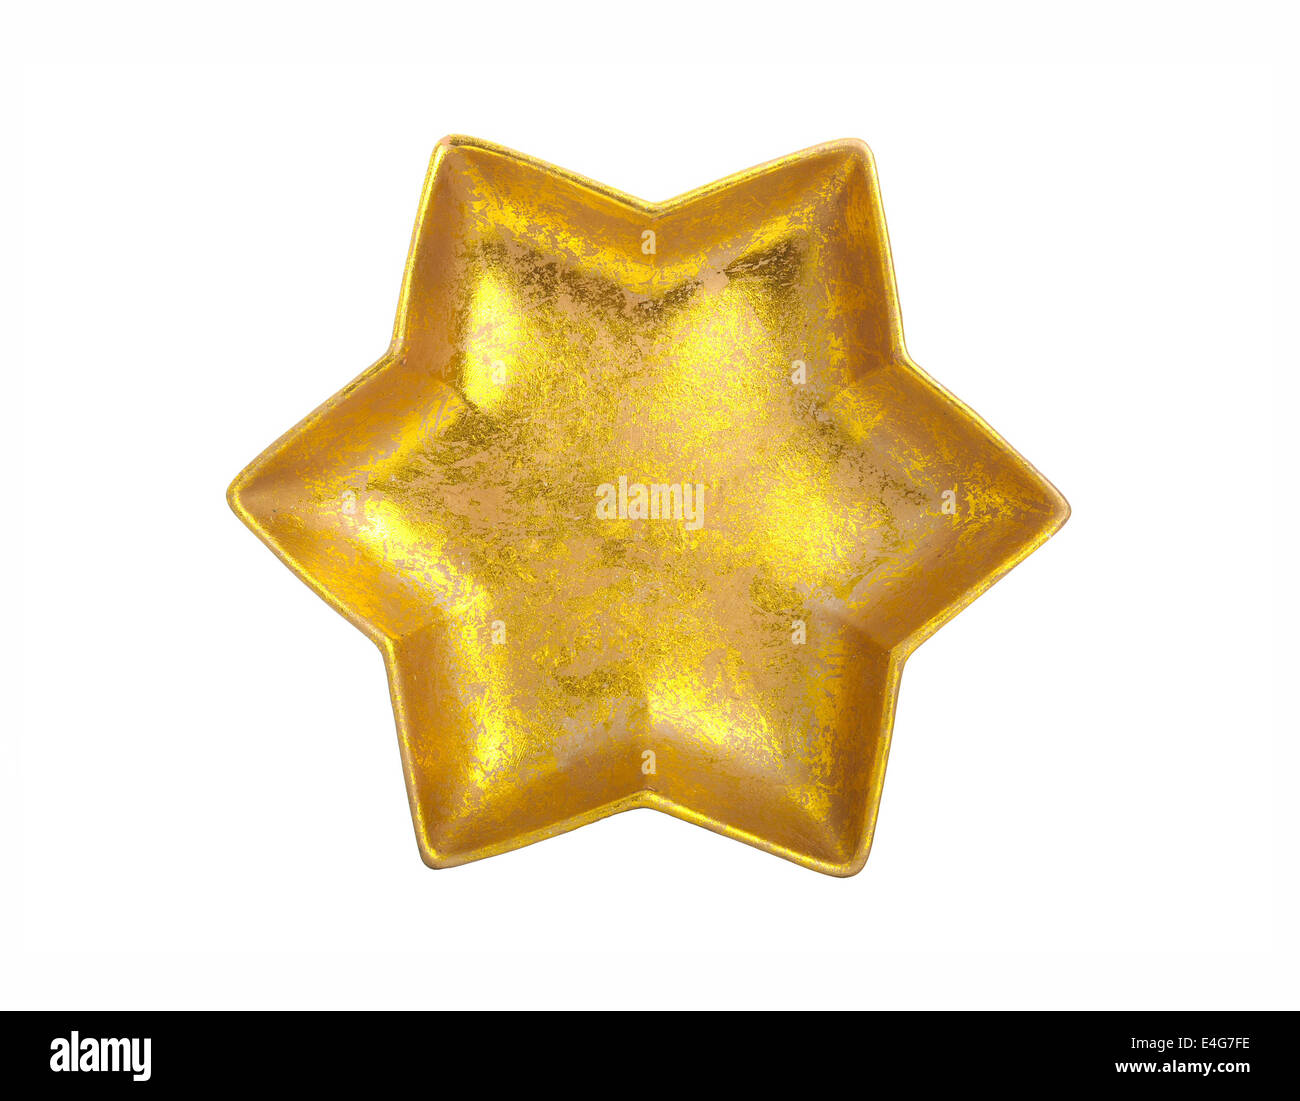 Goldener Stern isoliert über weiss - schöne Weihnachtsdekoration Stockfoto